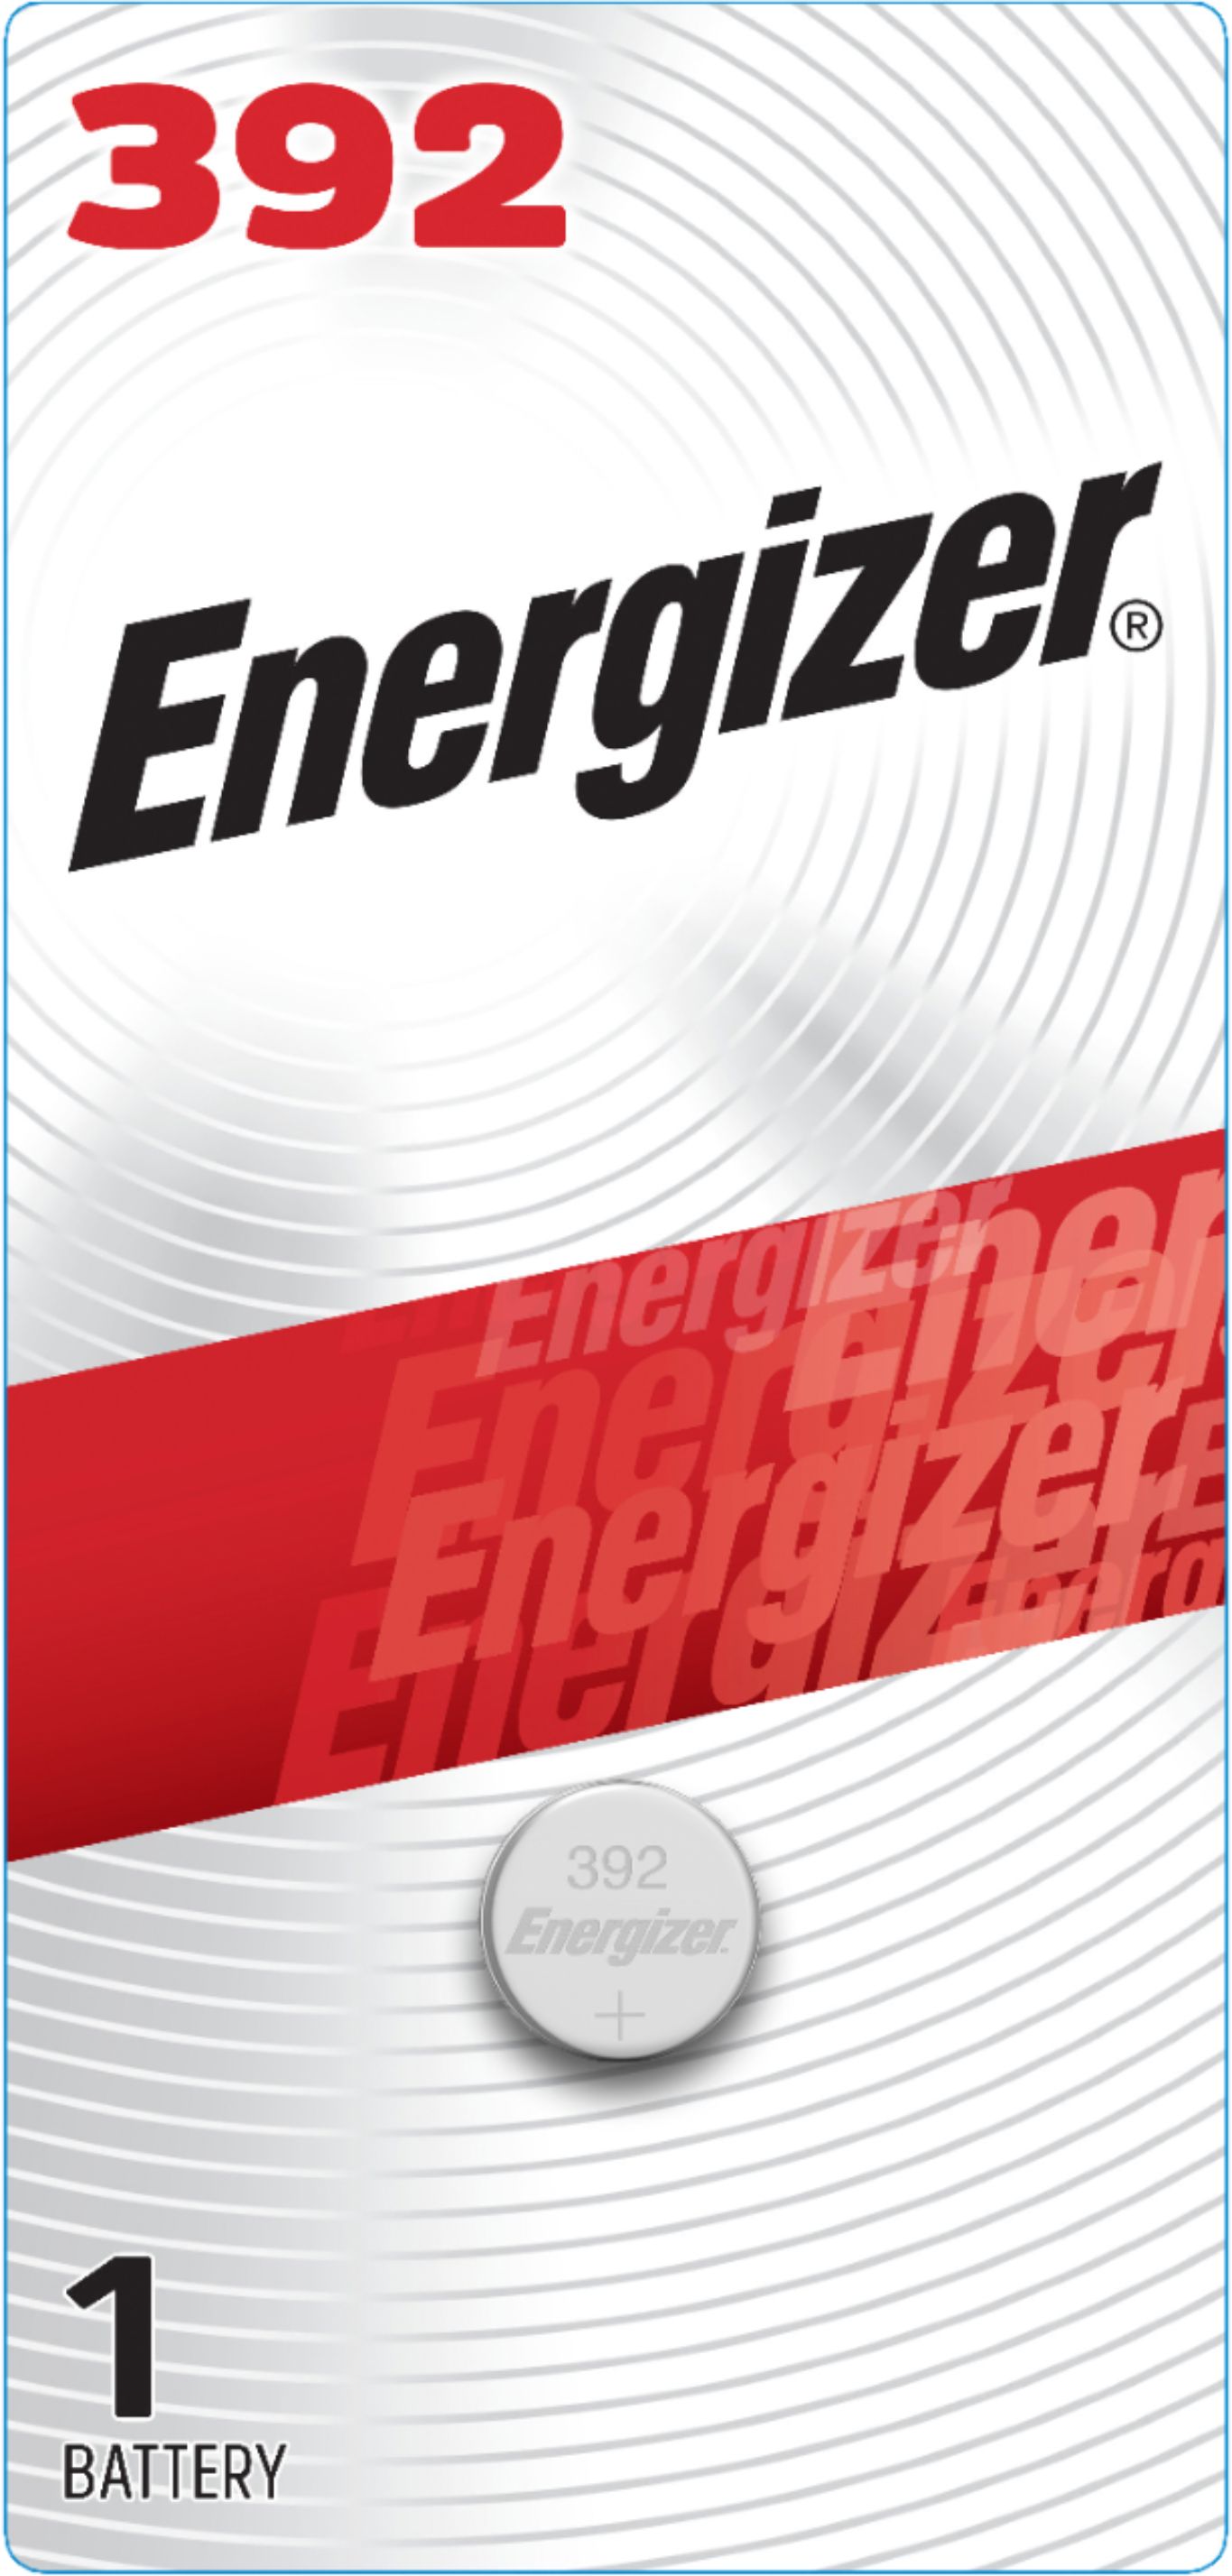 Håndbog fritid handikap Energizer 392 Silver Oxide Button Battery, 1 Pack 392BPZ - Best Buy